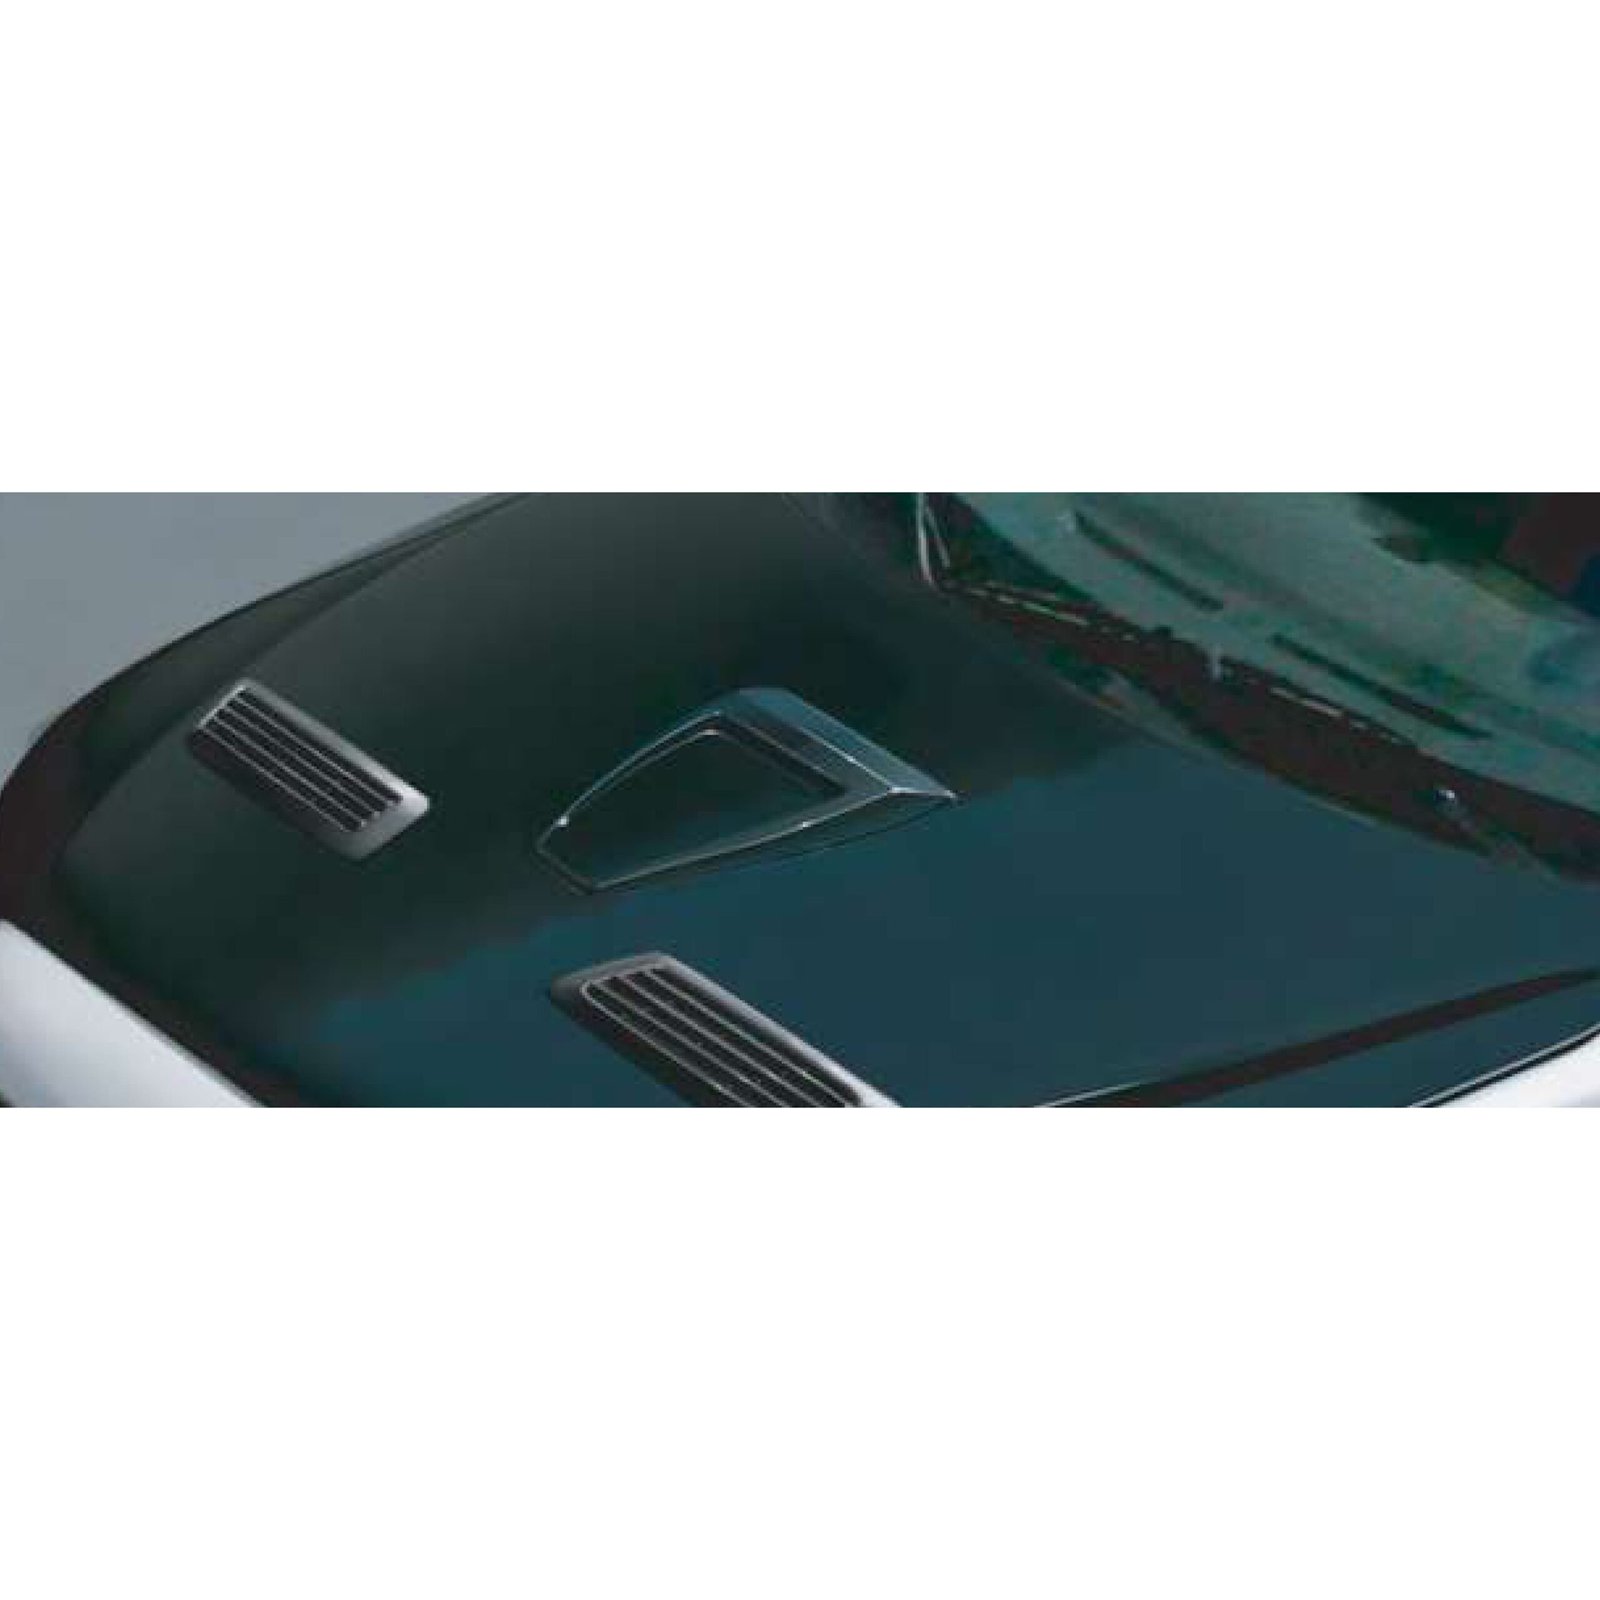 Bodykit de Conversion para Mitsubishi Lancer EVO (2010-2014)